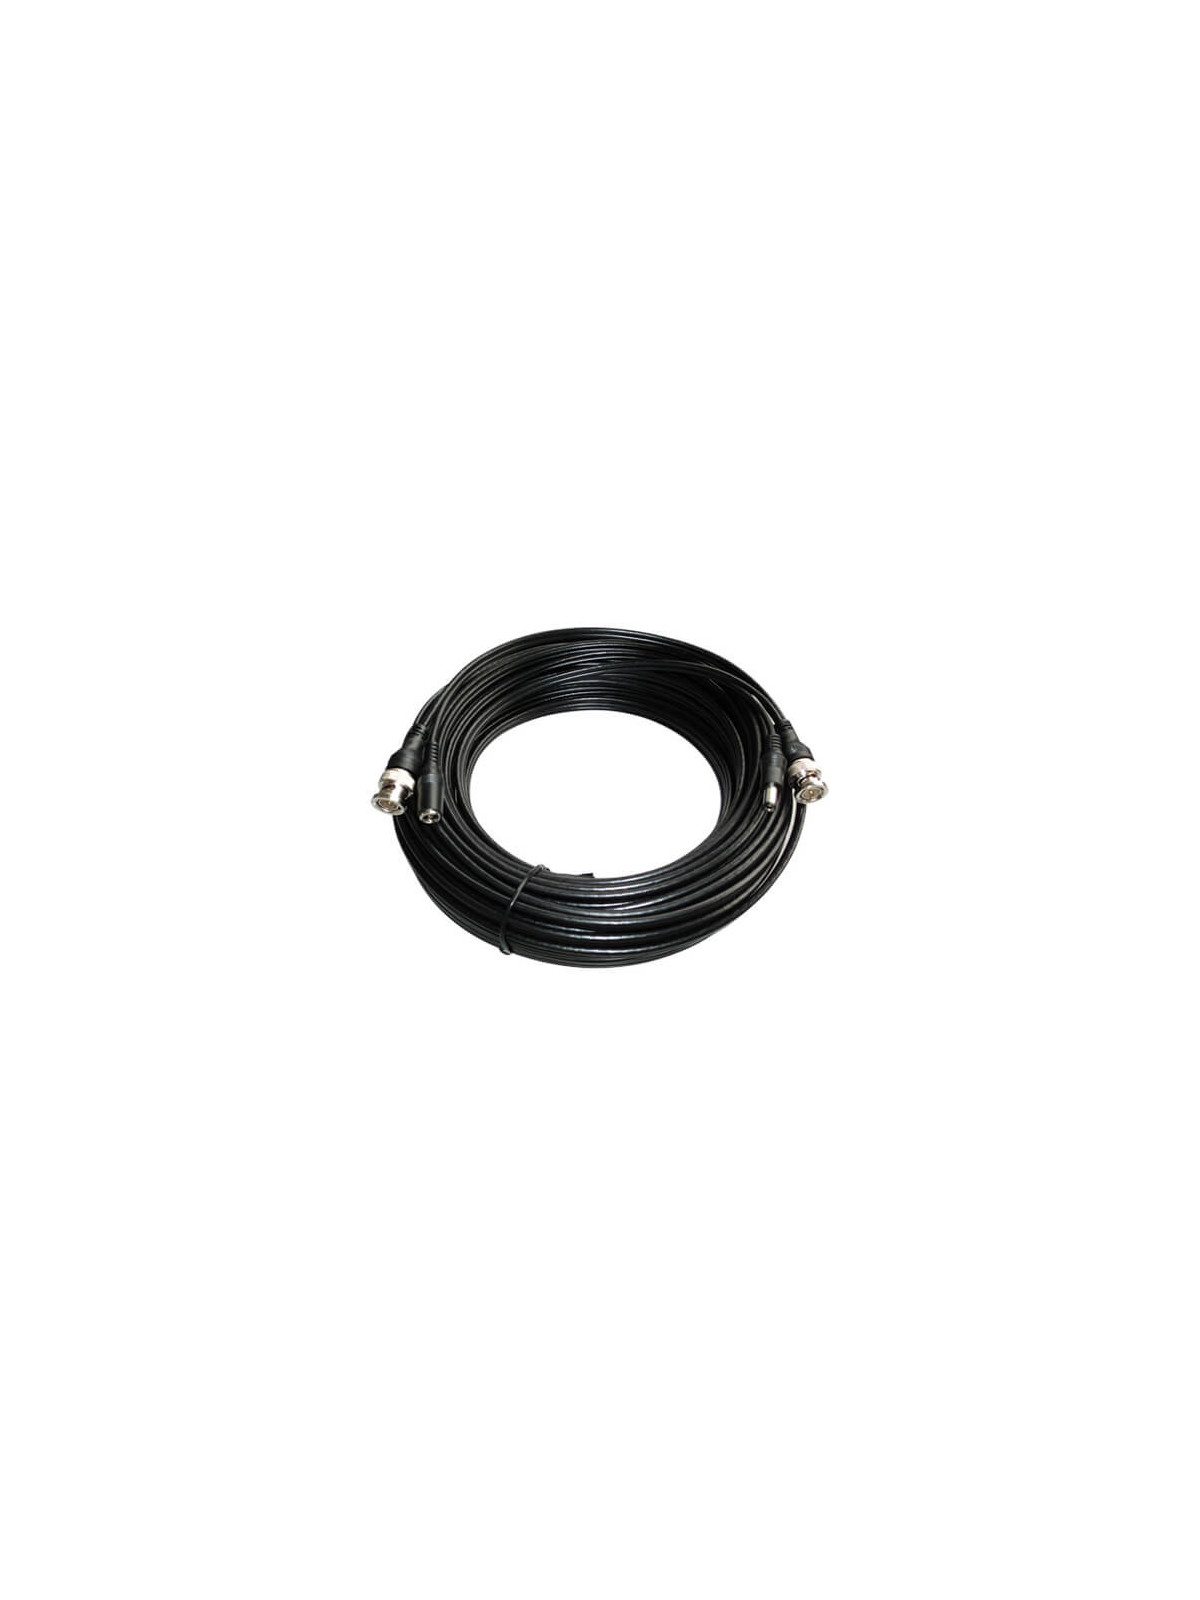 Cable alargo  coaxial RG59 BNC + alimentación negro  (5m)